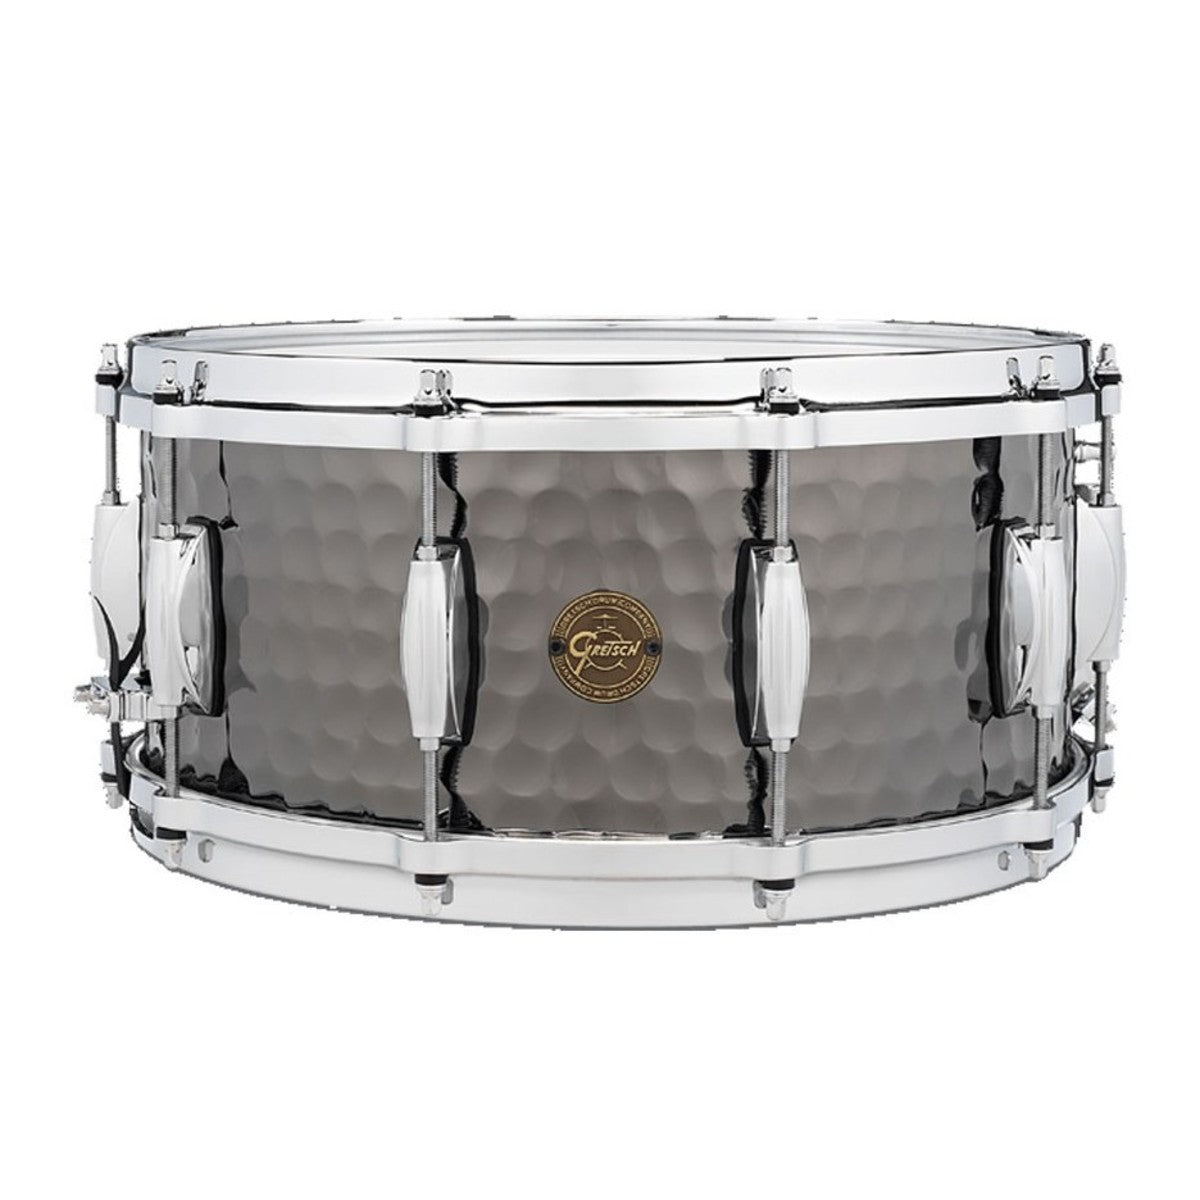 Gretsch "Full Range" 14"x6.5" Hammered Black Steel Snare Drum